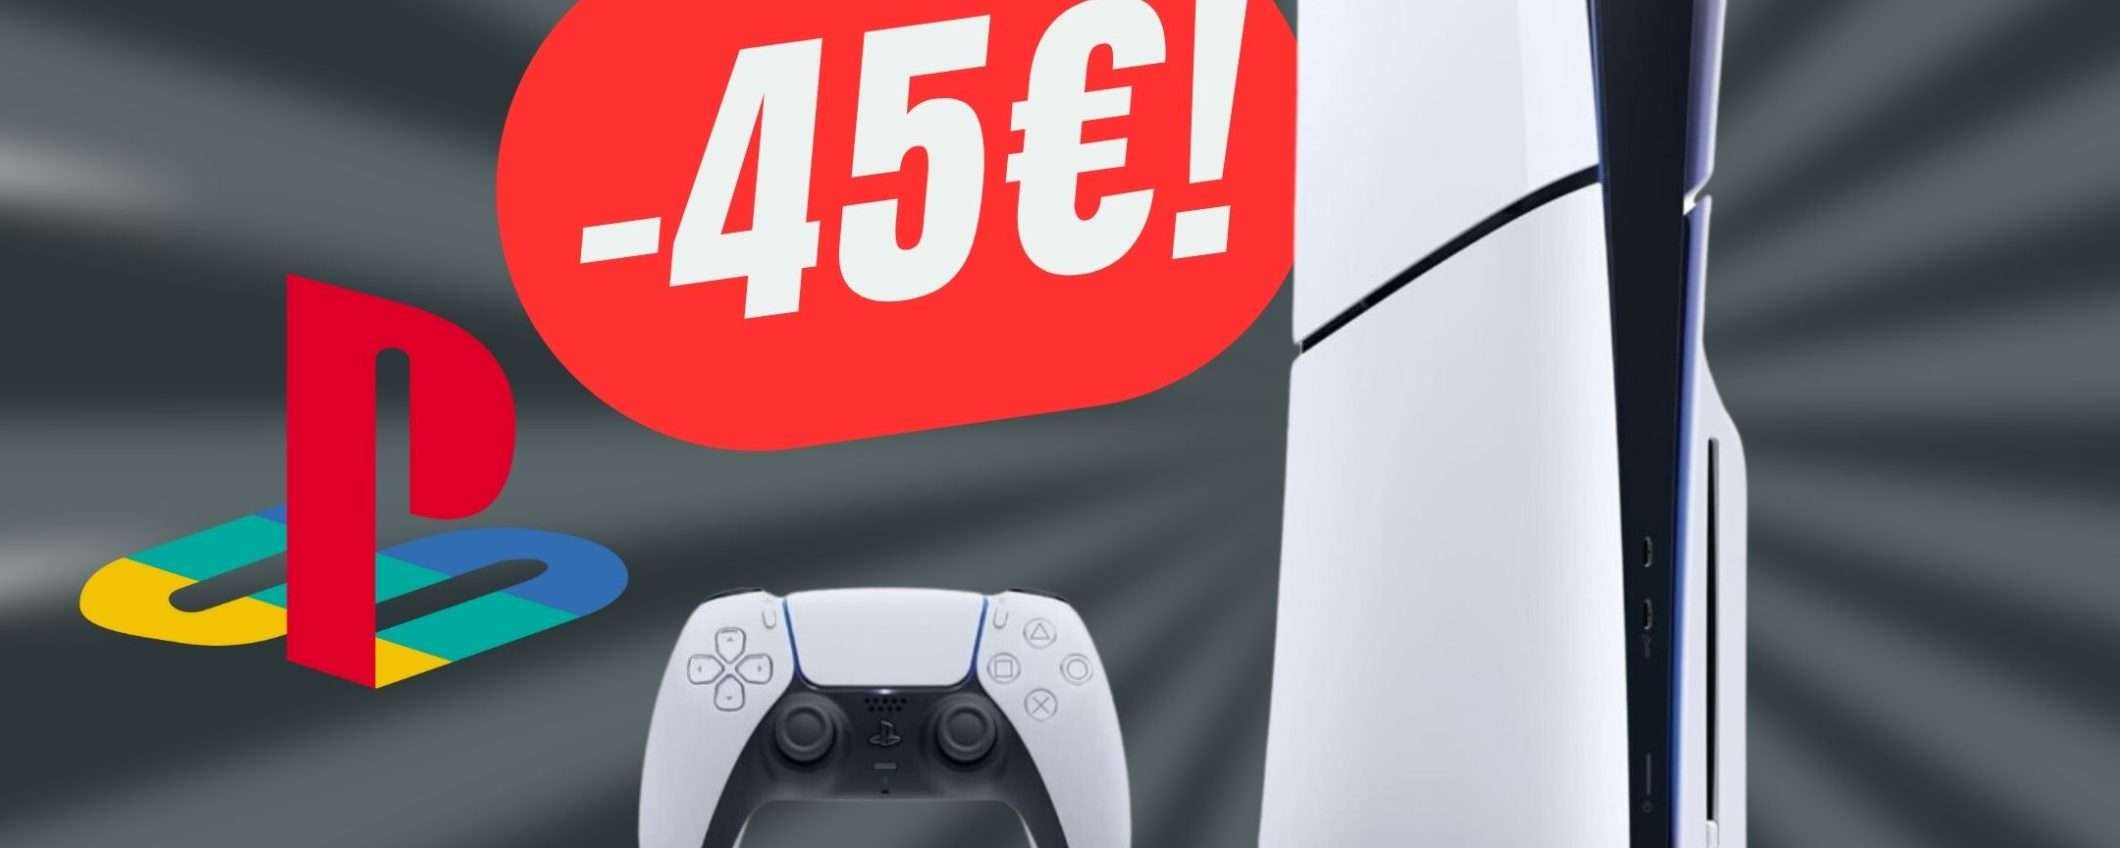 Risparmia 45€ sulla nuova PlayStation 5 Slim!